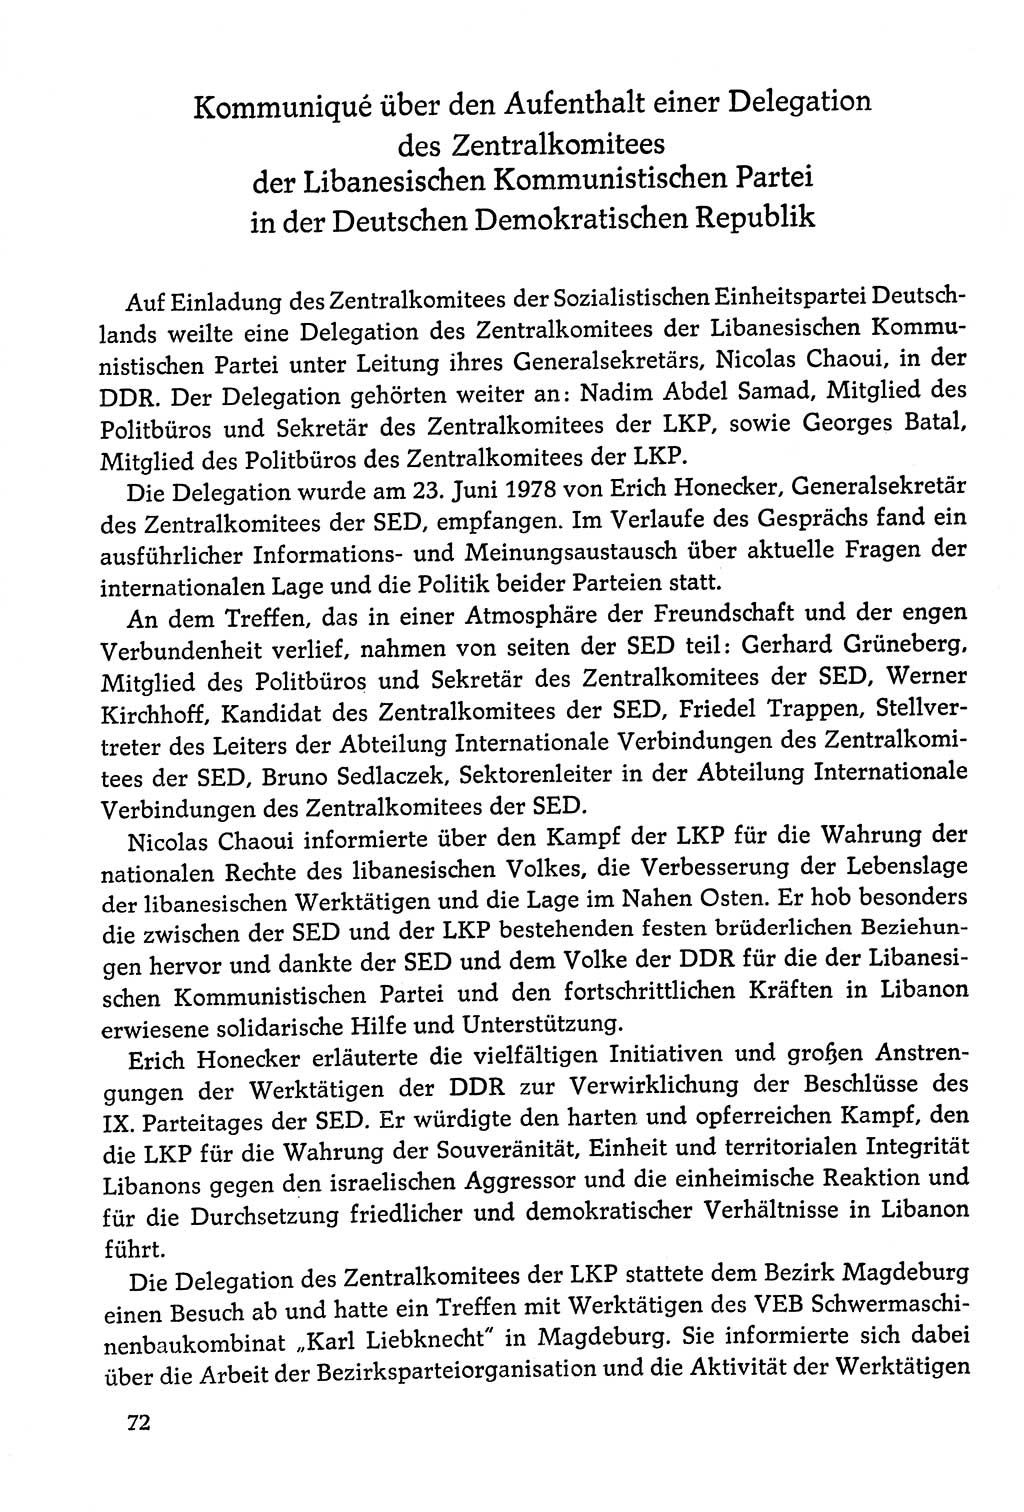 Dokumente der Sozialistischen Einheitspartei Deutschlands (SED) [Deutsche Demokratische Republik (DDR)] 1978-1979, Seite 72 (Dok. SED DDR 1978-1979, S. 72)